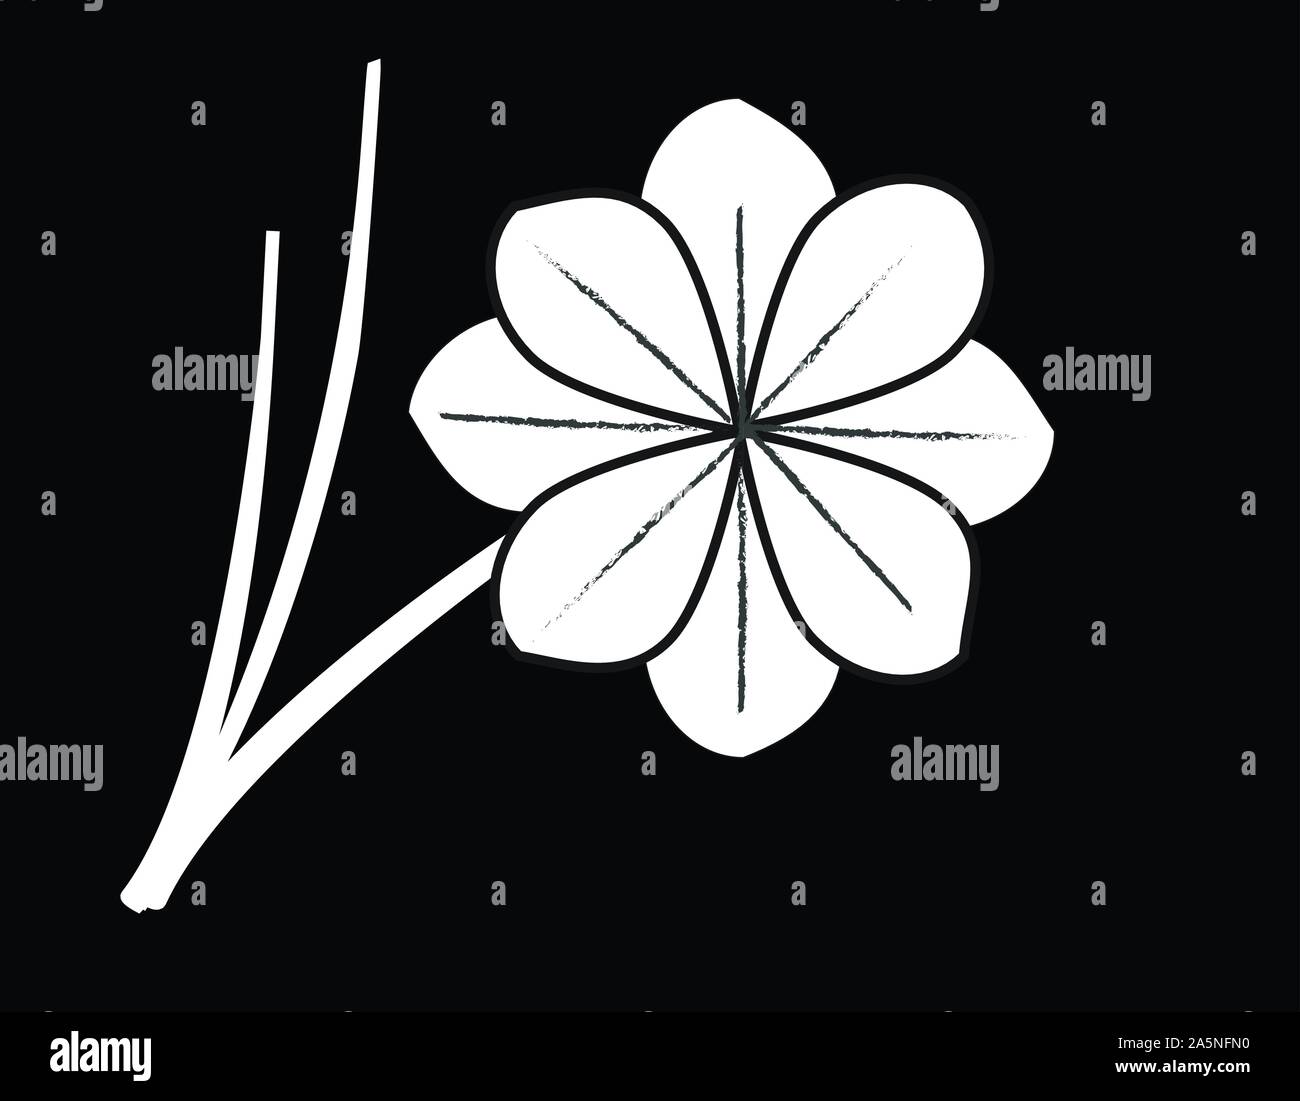 white sandalwood flower vector on black background, Thai die symbol Stock Vector